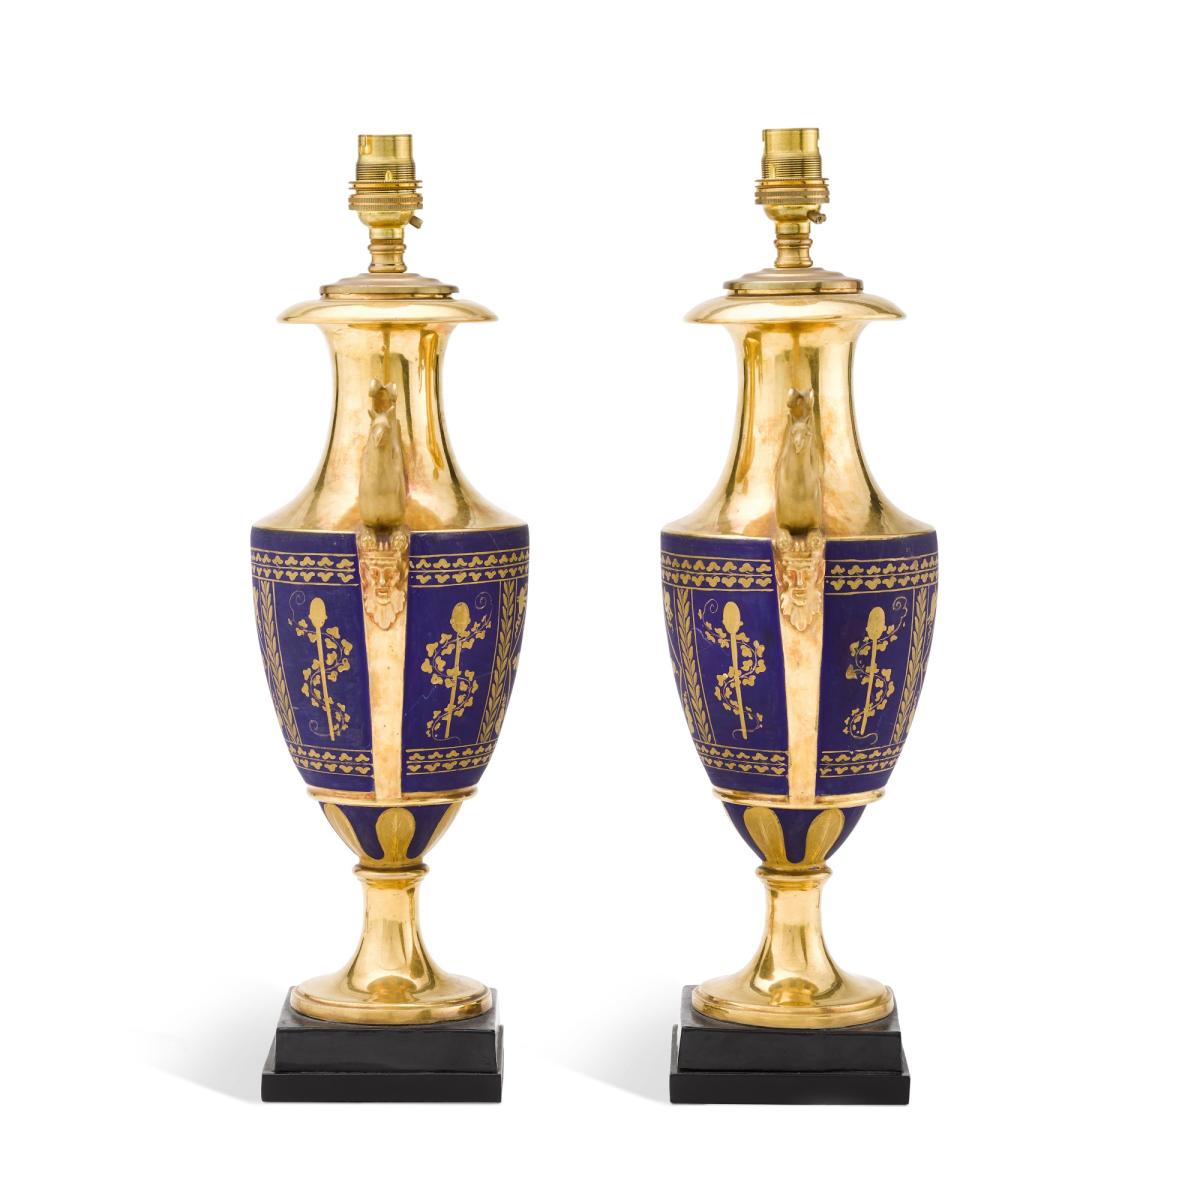 Pair of Paris Porcelain Lamps